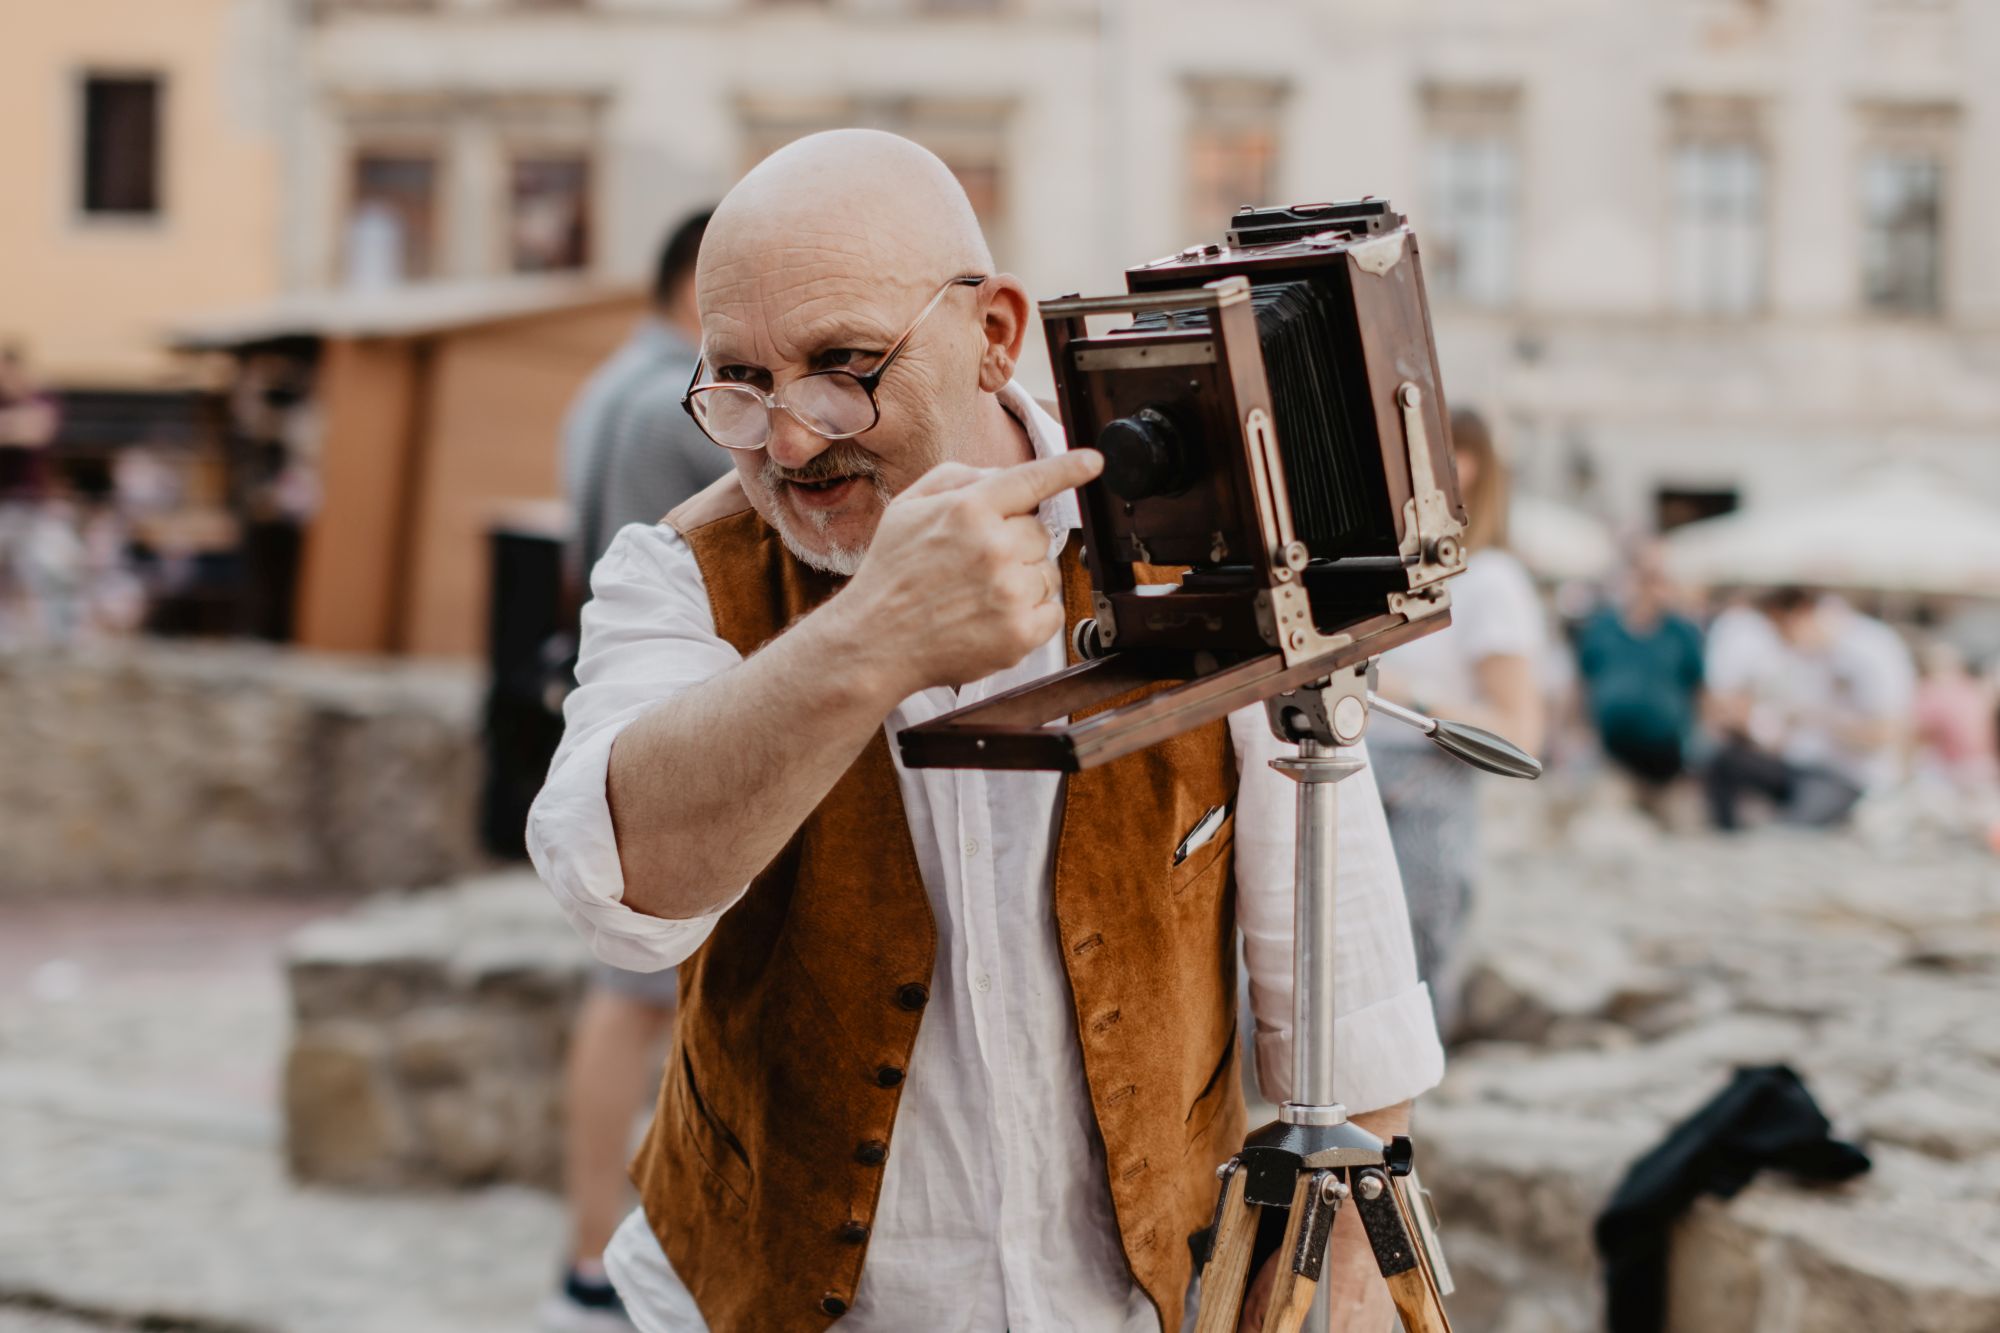 Roman Krawczenko, fotograf, wskazuje palcem na obiektyw zabytkowego aparatu fotograficznego, którym wykonuje zdjęcia. Starszy mężczyzna ma na sobie duże okulary, białą koszulę i miodową kamizelkę.